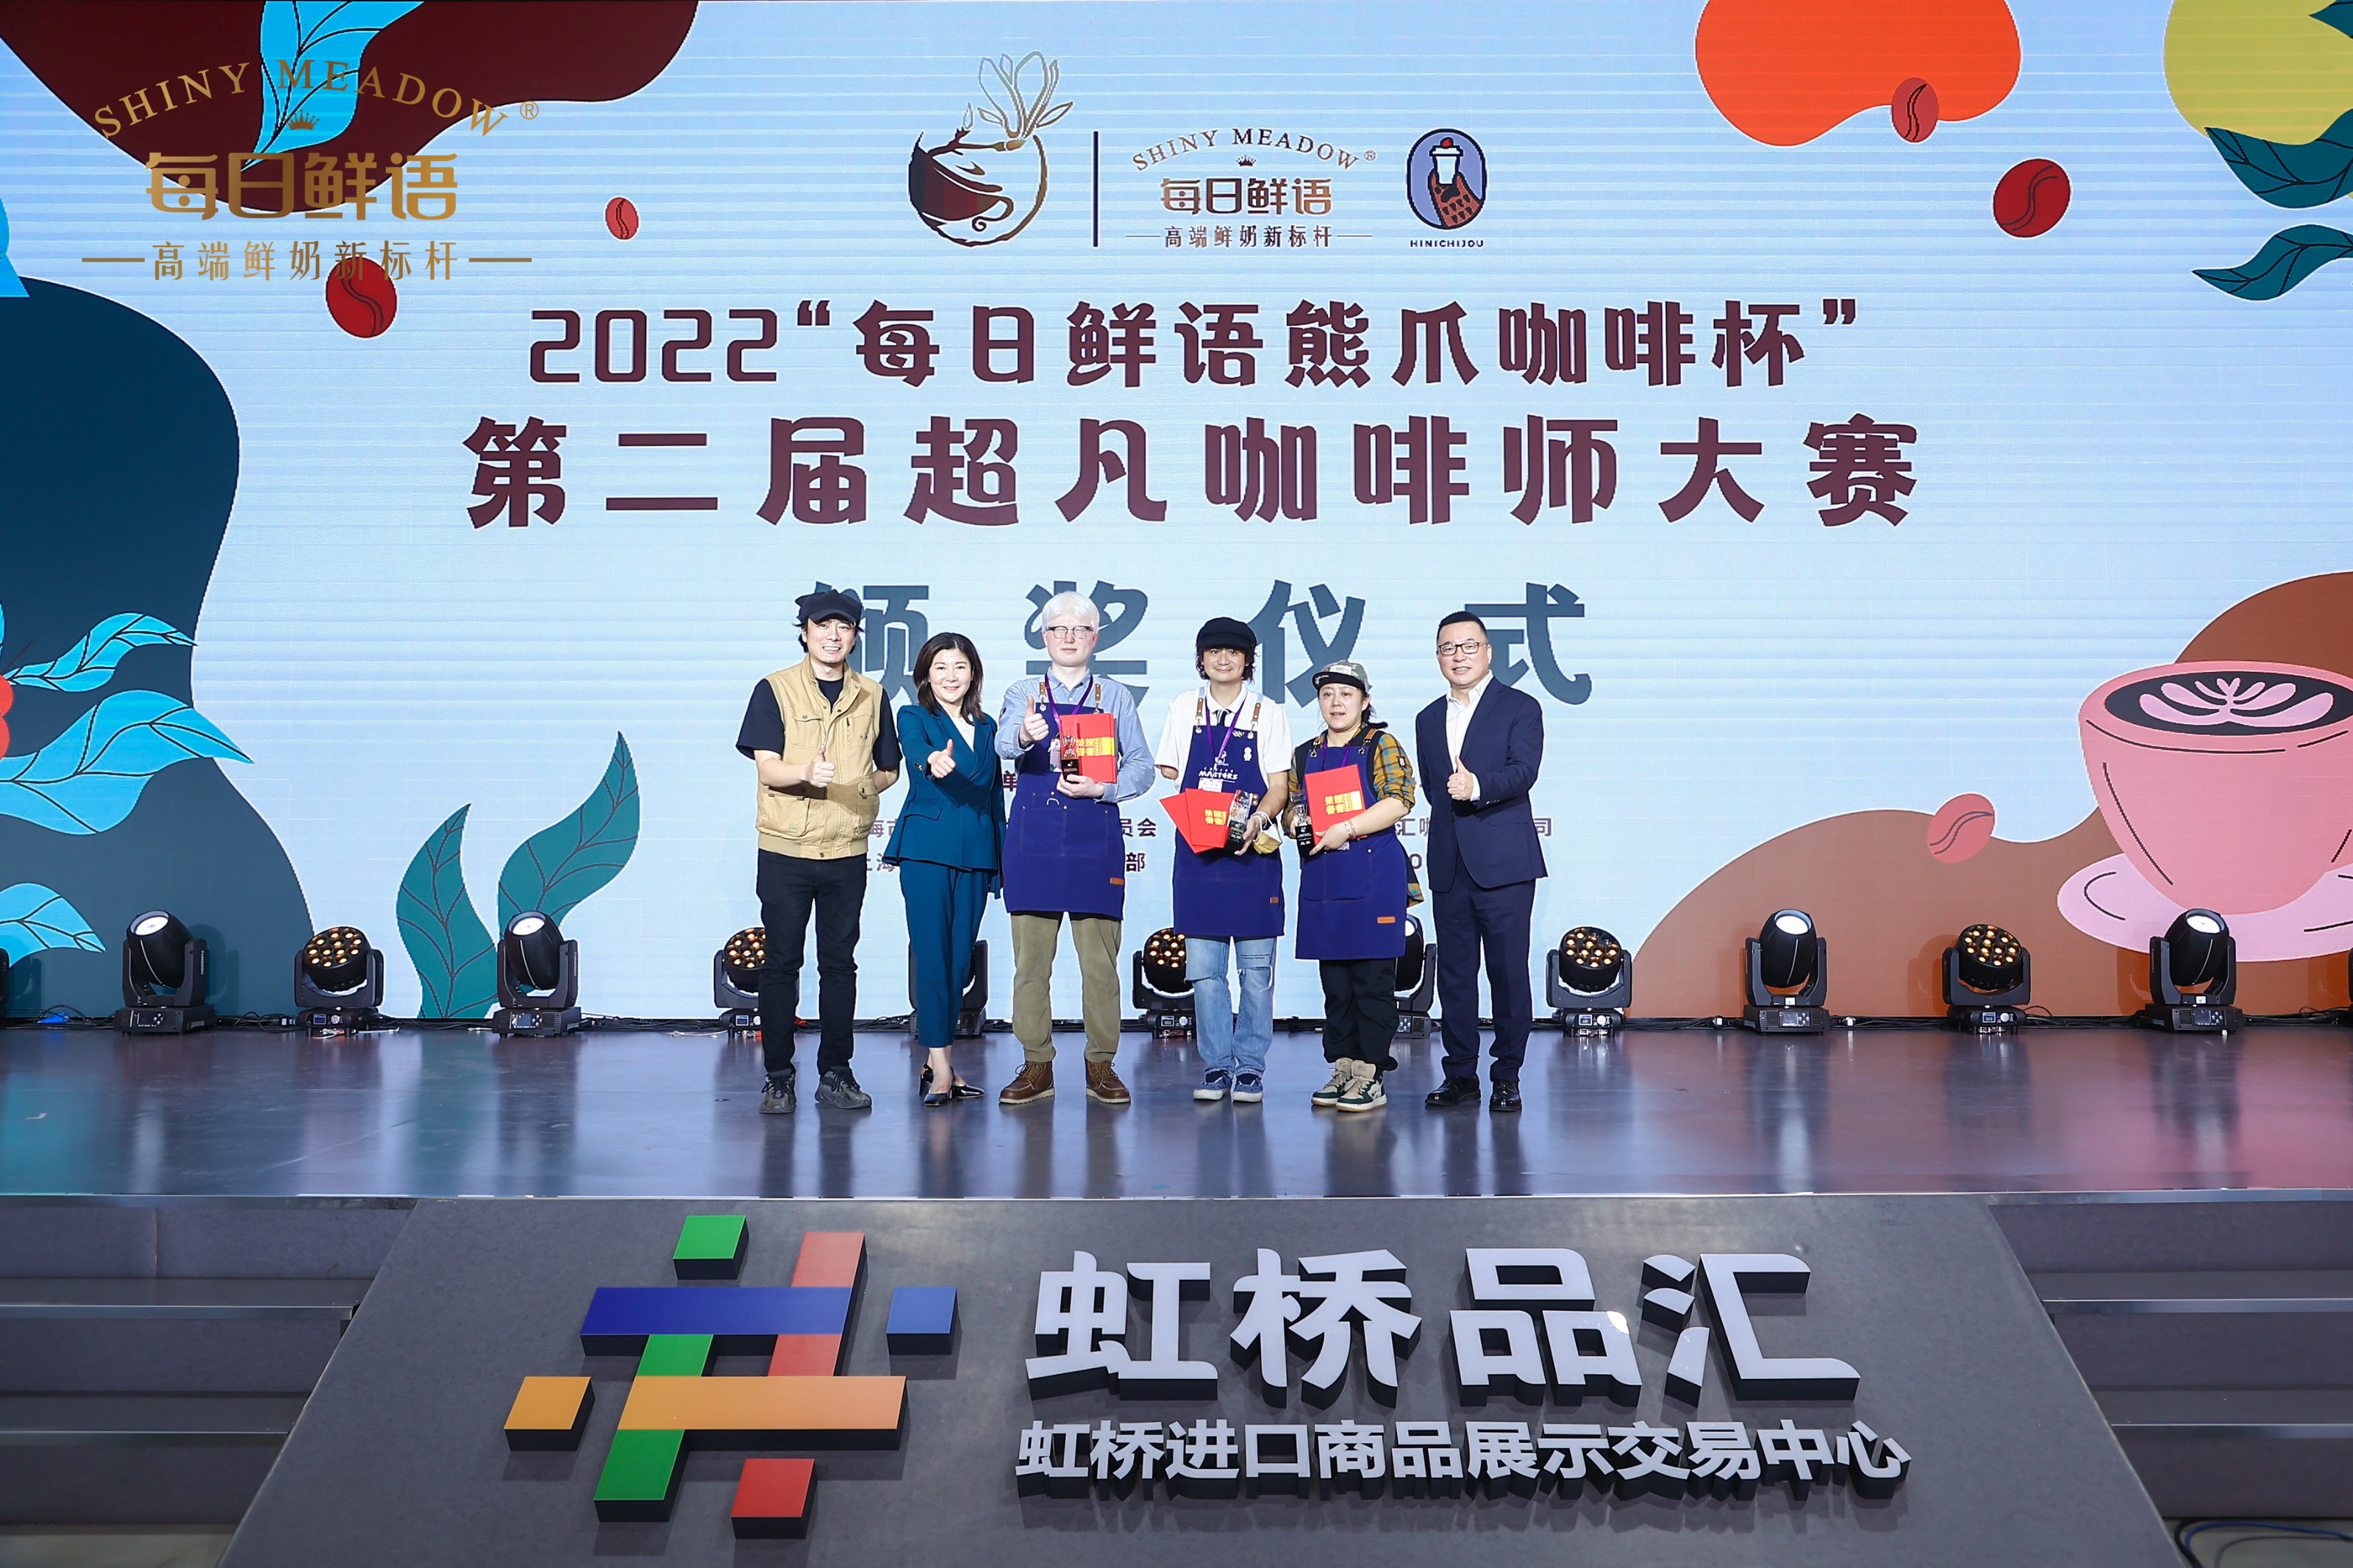 11月28日，“每日鲜语熊爪咖啡杯”第二届超凡咖啡师大赛在虹桥国际咖啡港开赛。